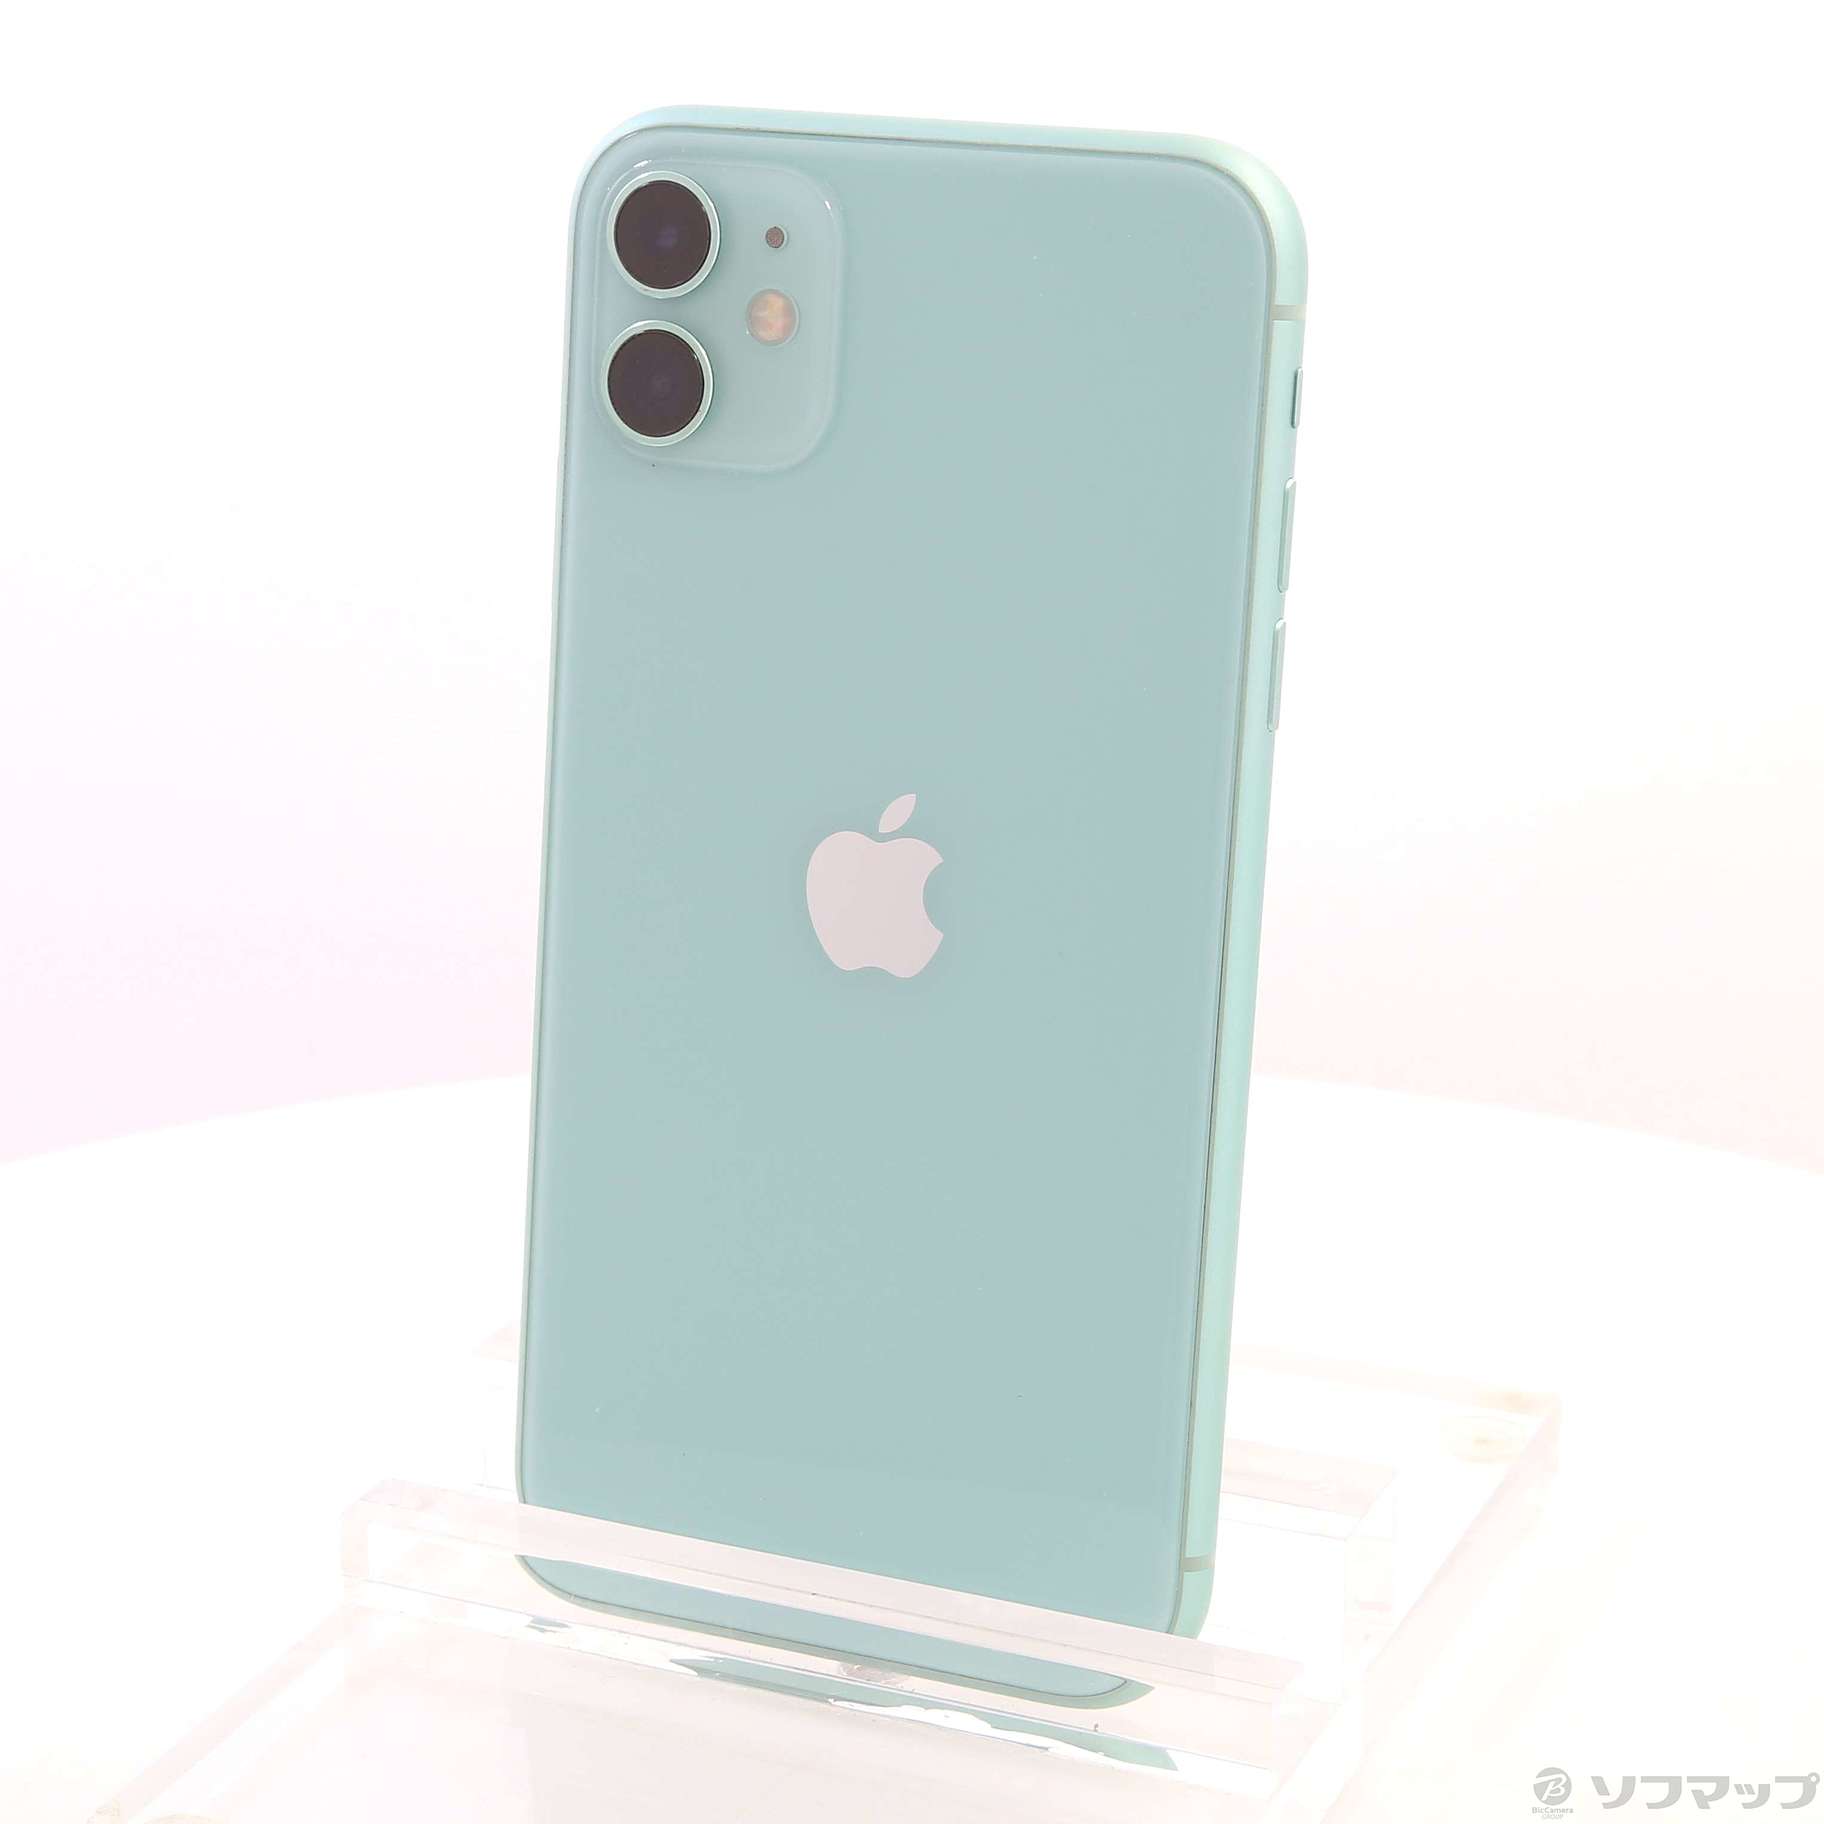 iPhone11 64GB green